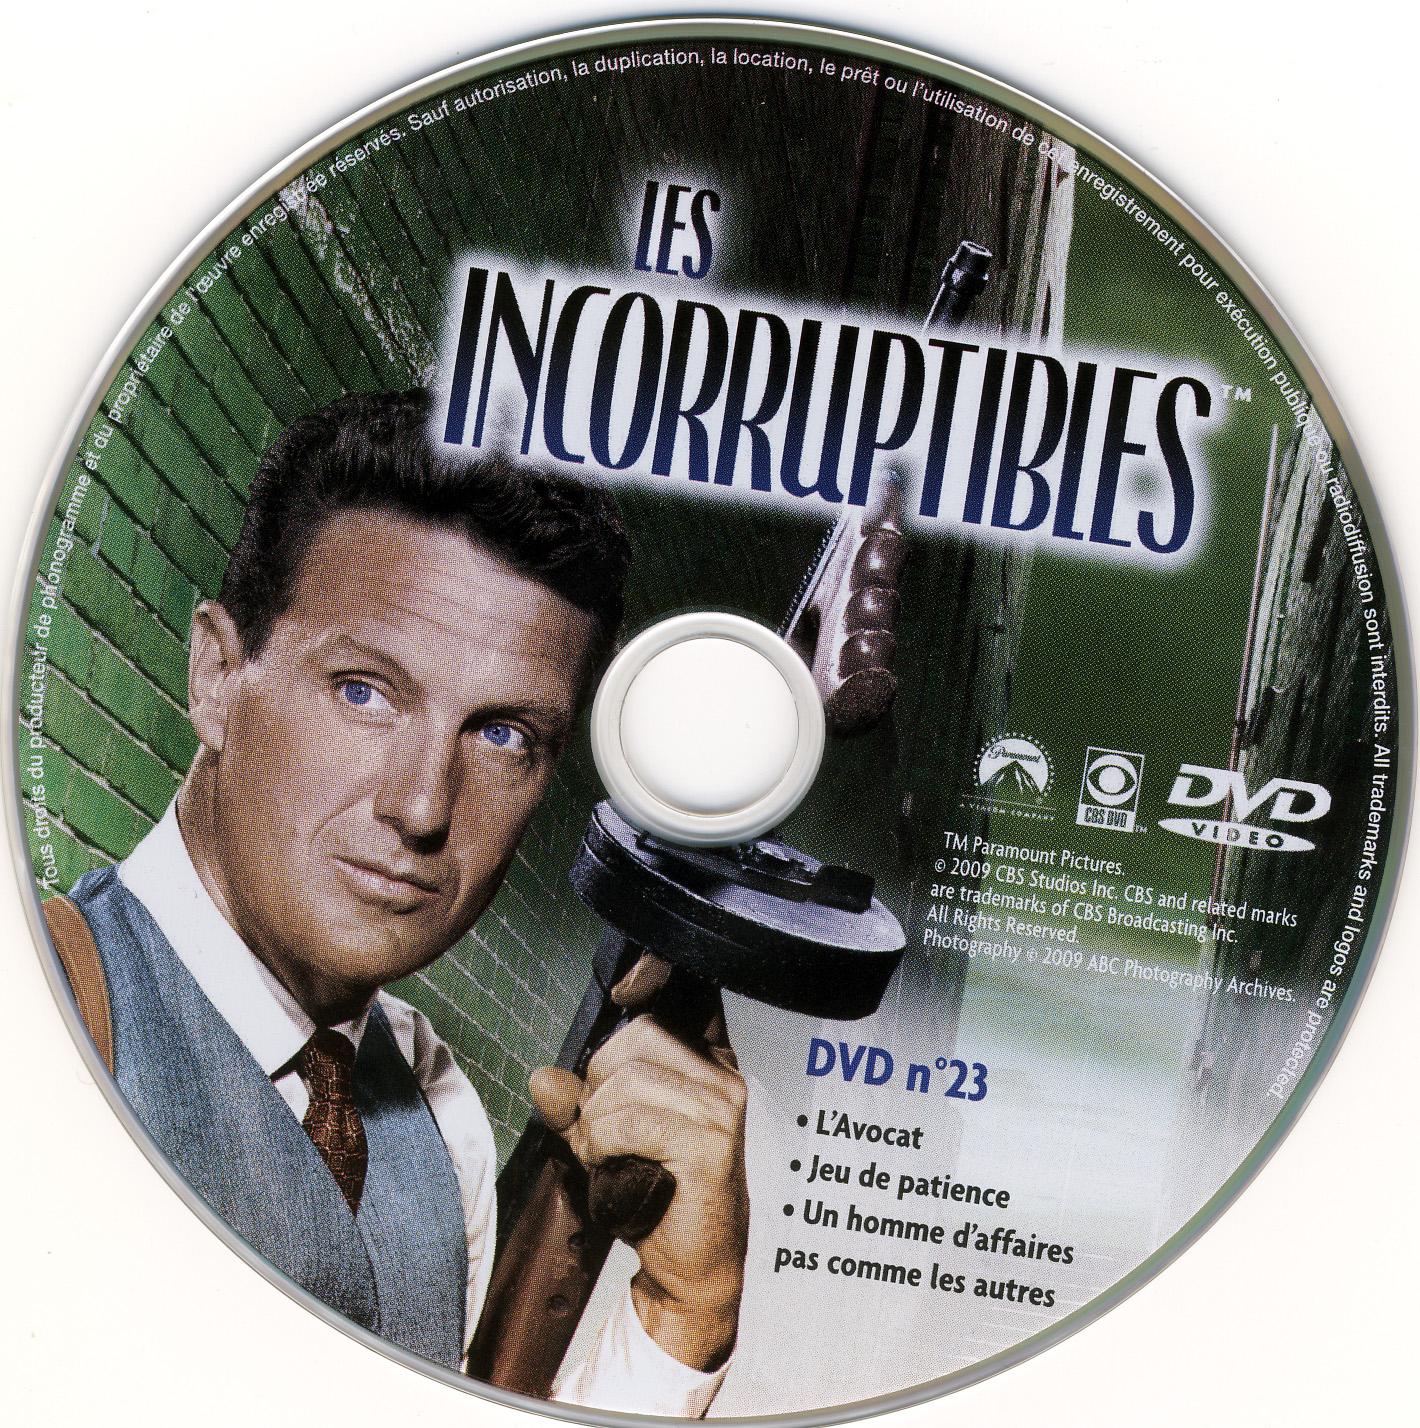 Les incorruptibles intgrale DVD 23